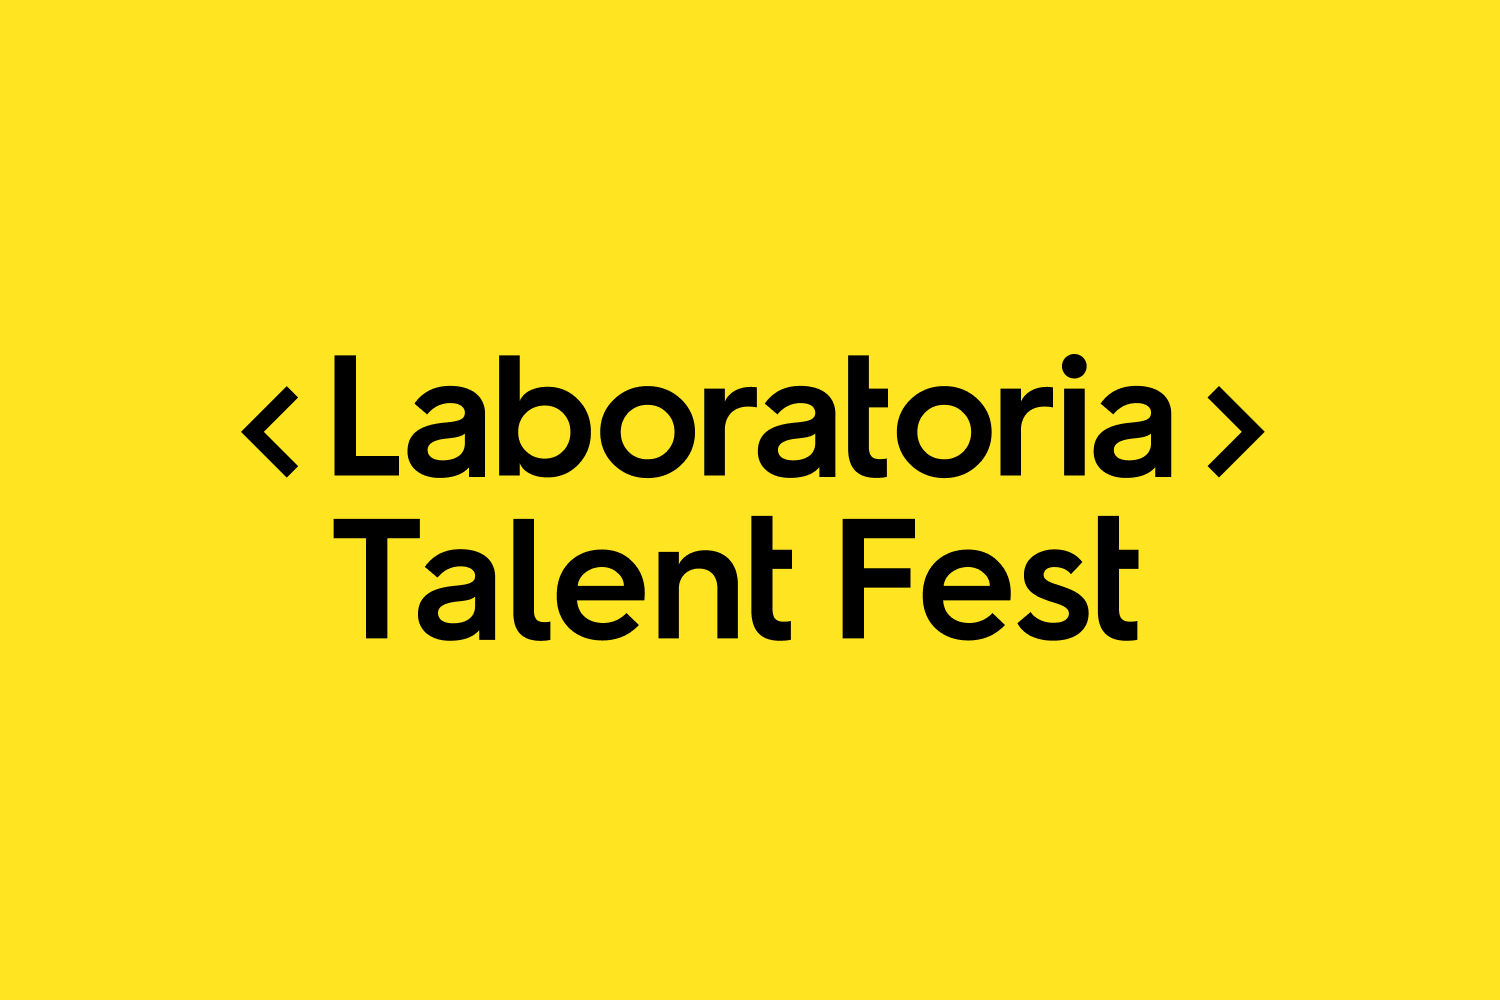 El Talent Fest de Laboratoria es el mejor evento para reclutar talento tech para tu empresa y hoy te contamos 5 razones para venir.